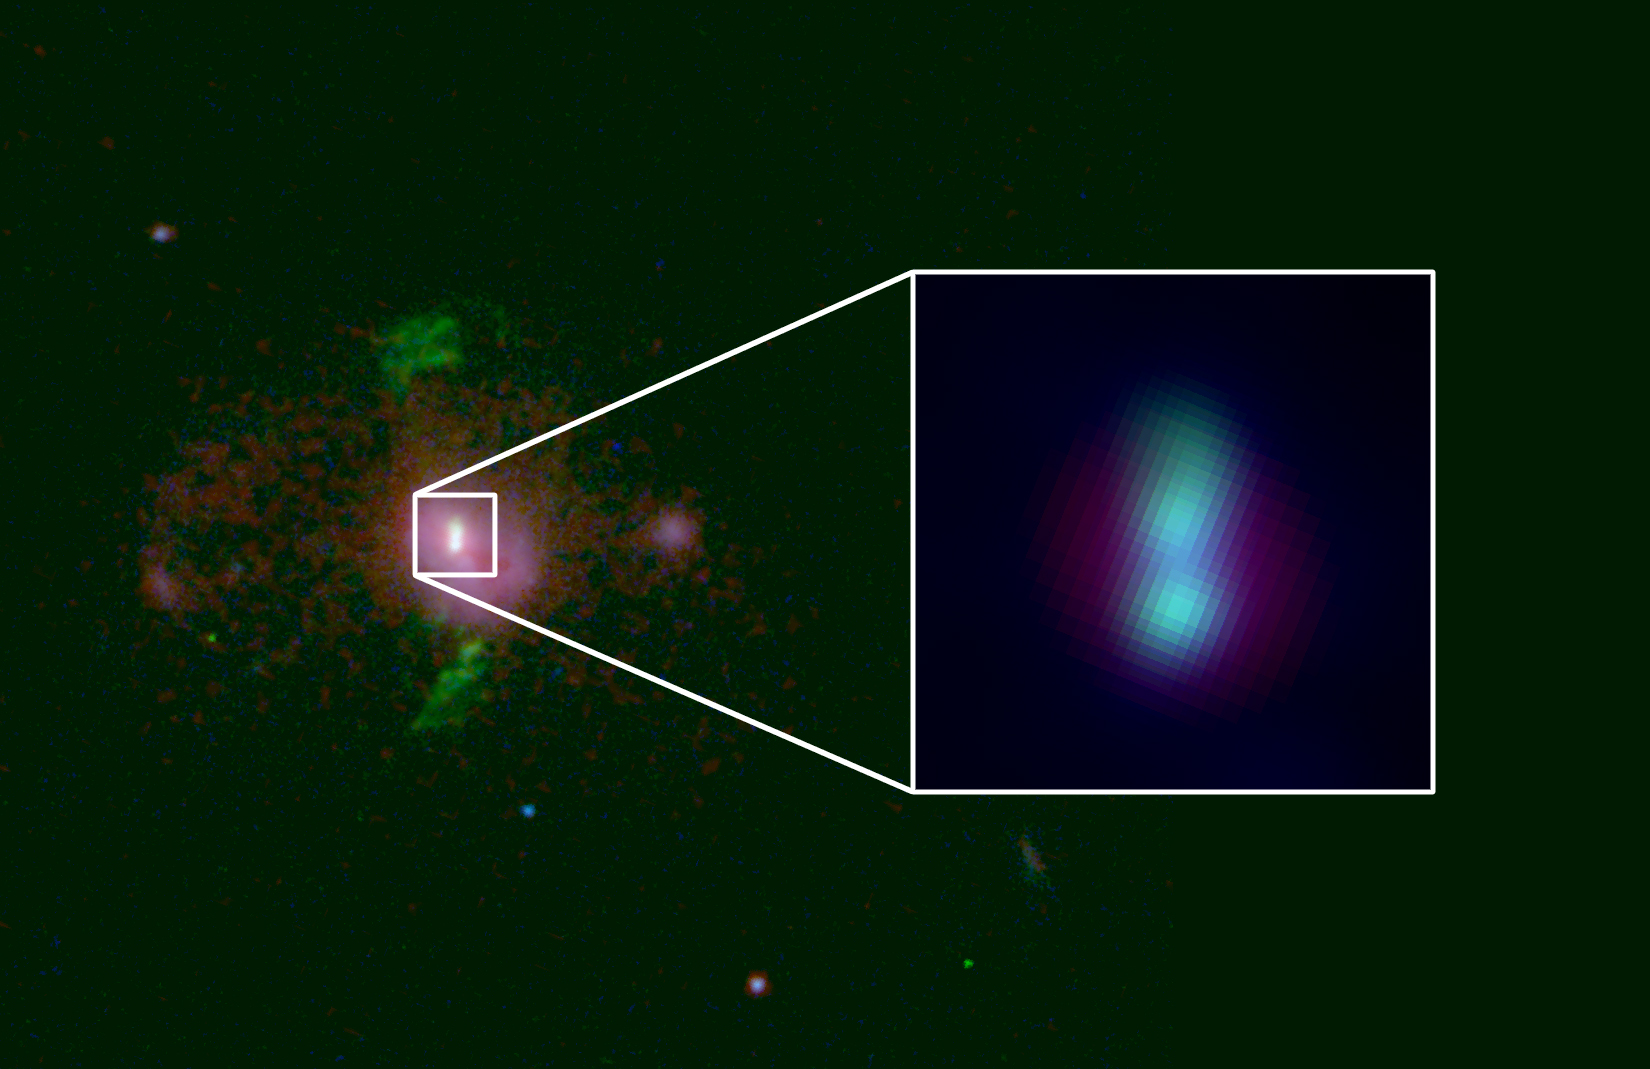 La galassia in questione e uno zoom sui nuclei contenenti i due buchi neri super massicci. Fonte: Simons Foundation